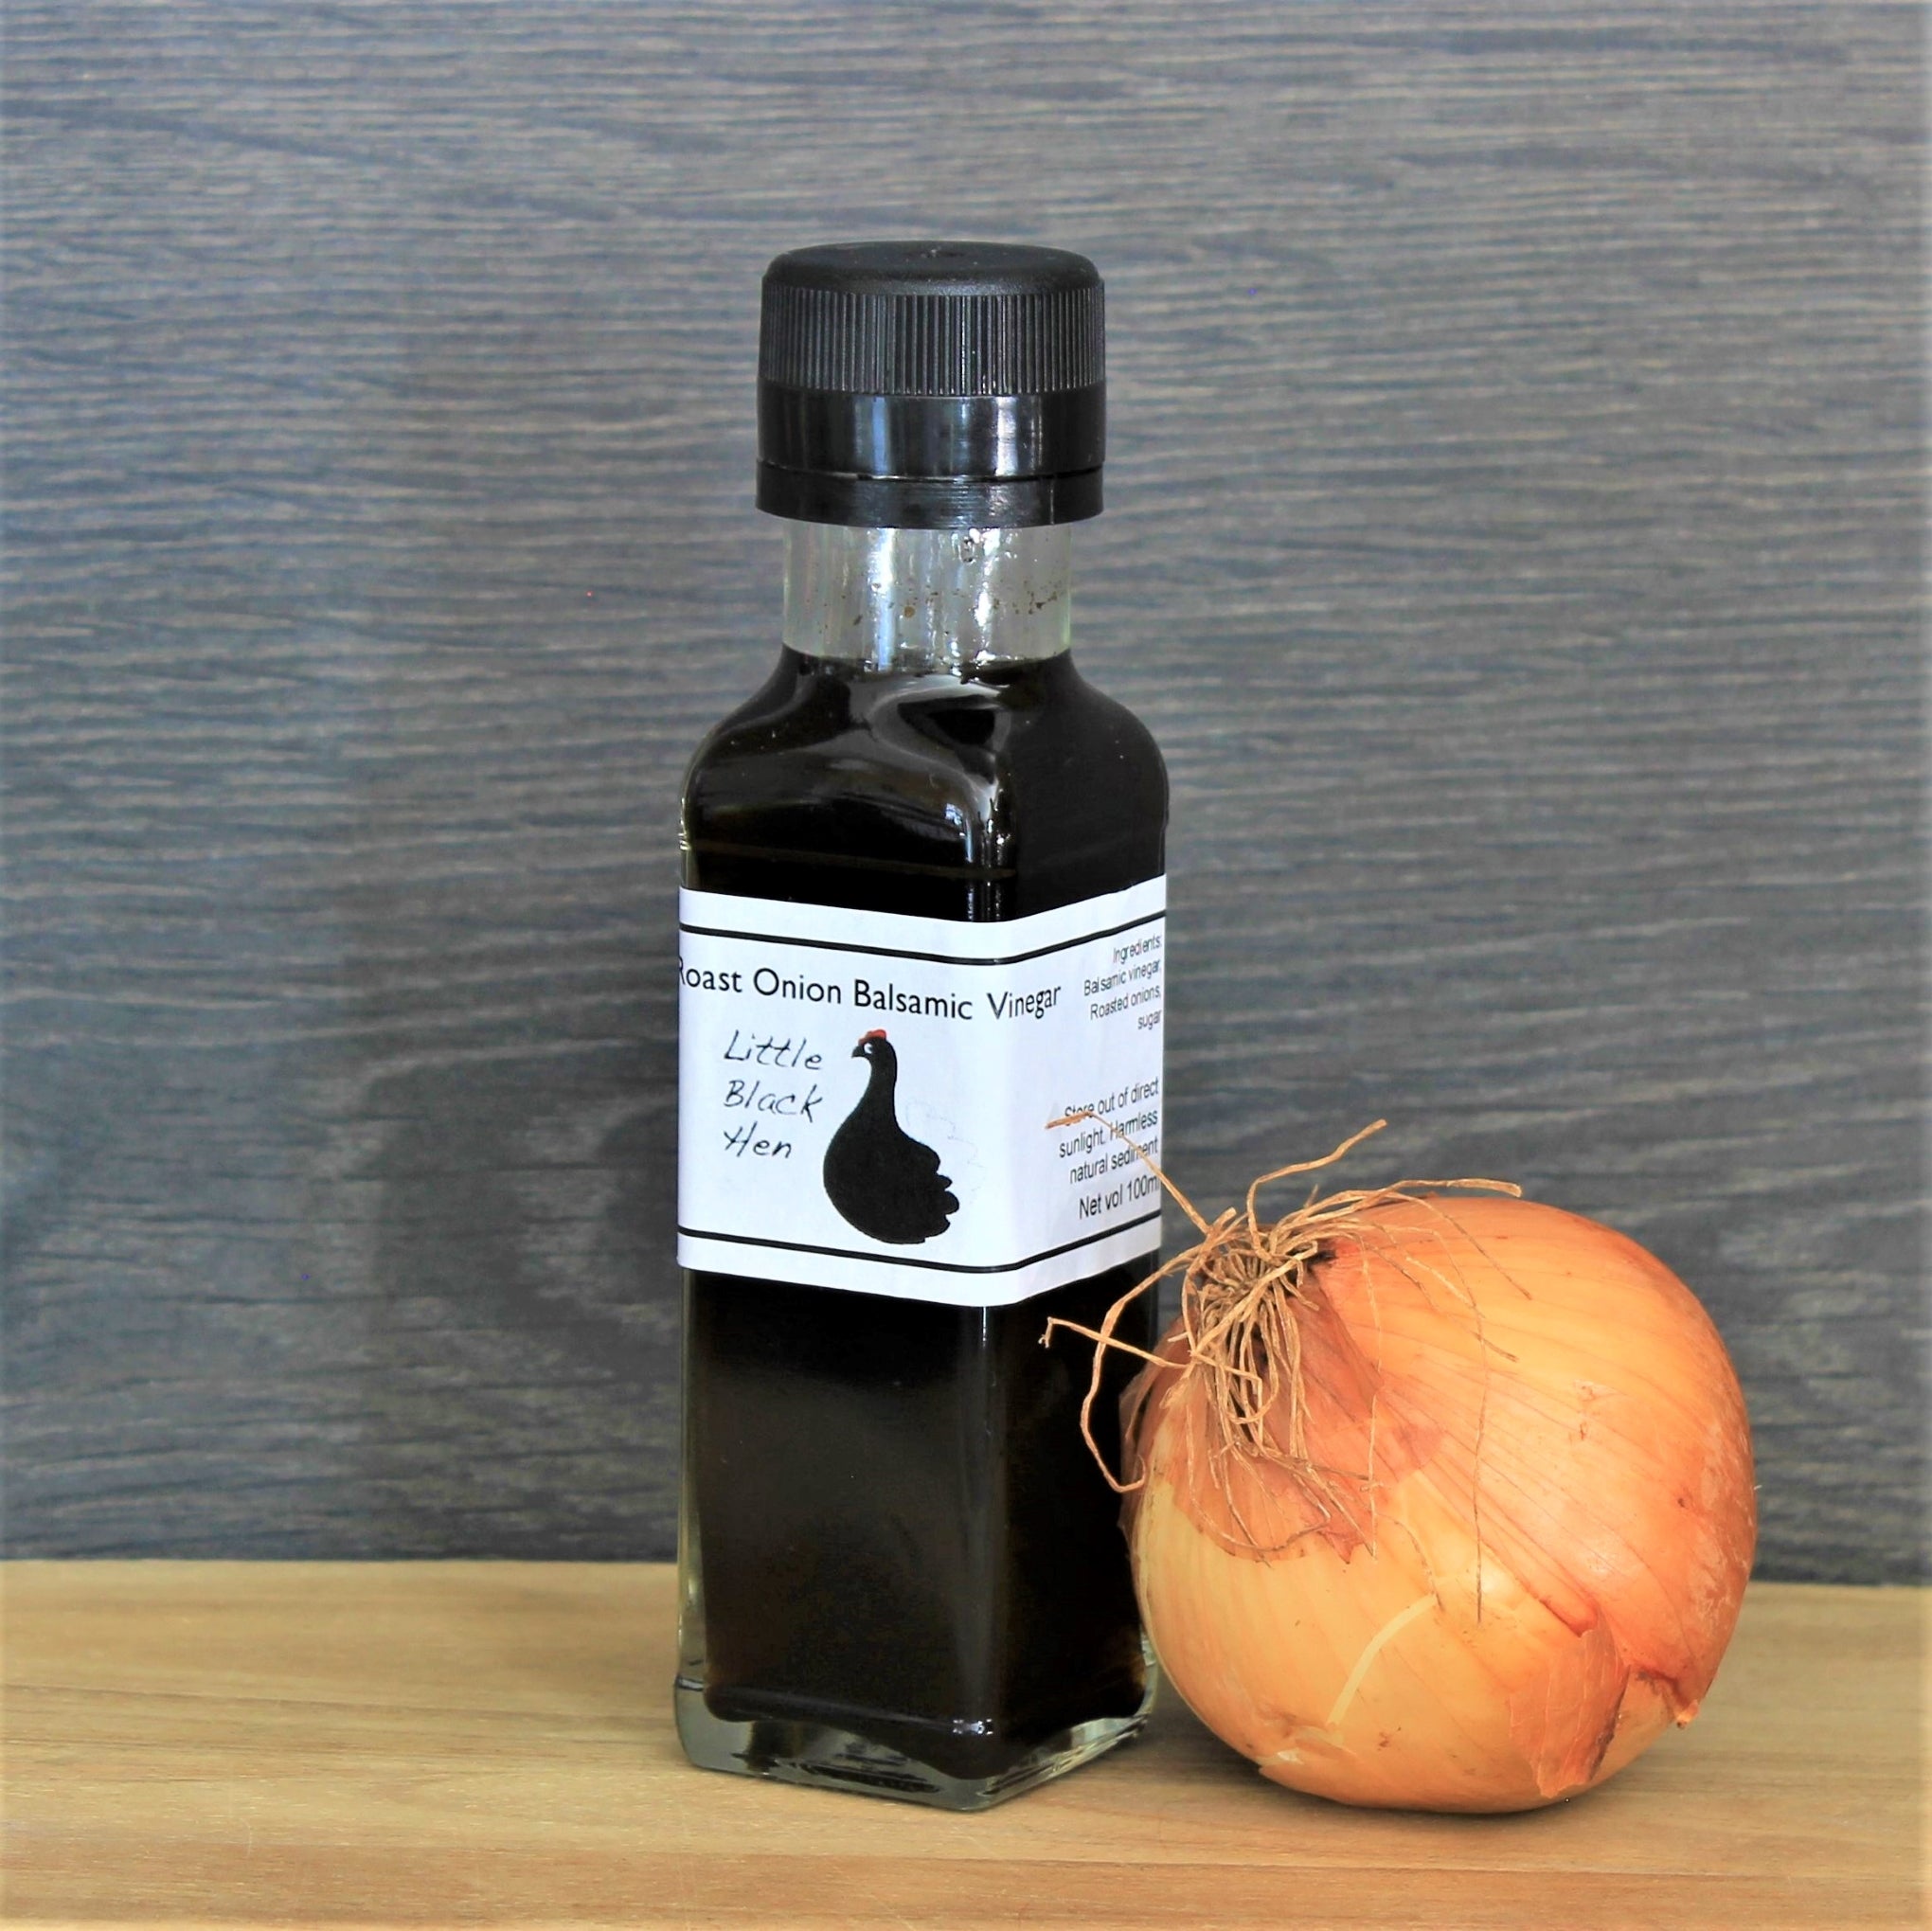 Bottle of Roast Onion Balsamic Vinegar by Little Black Hen